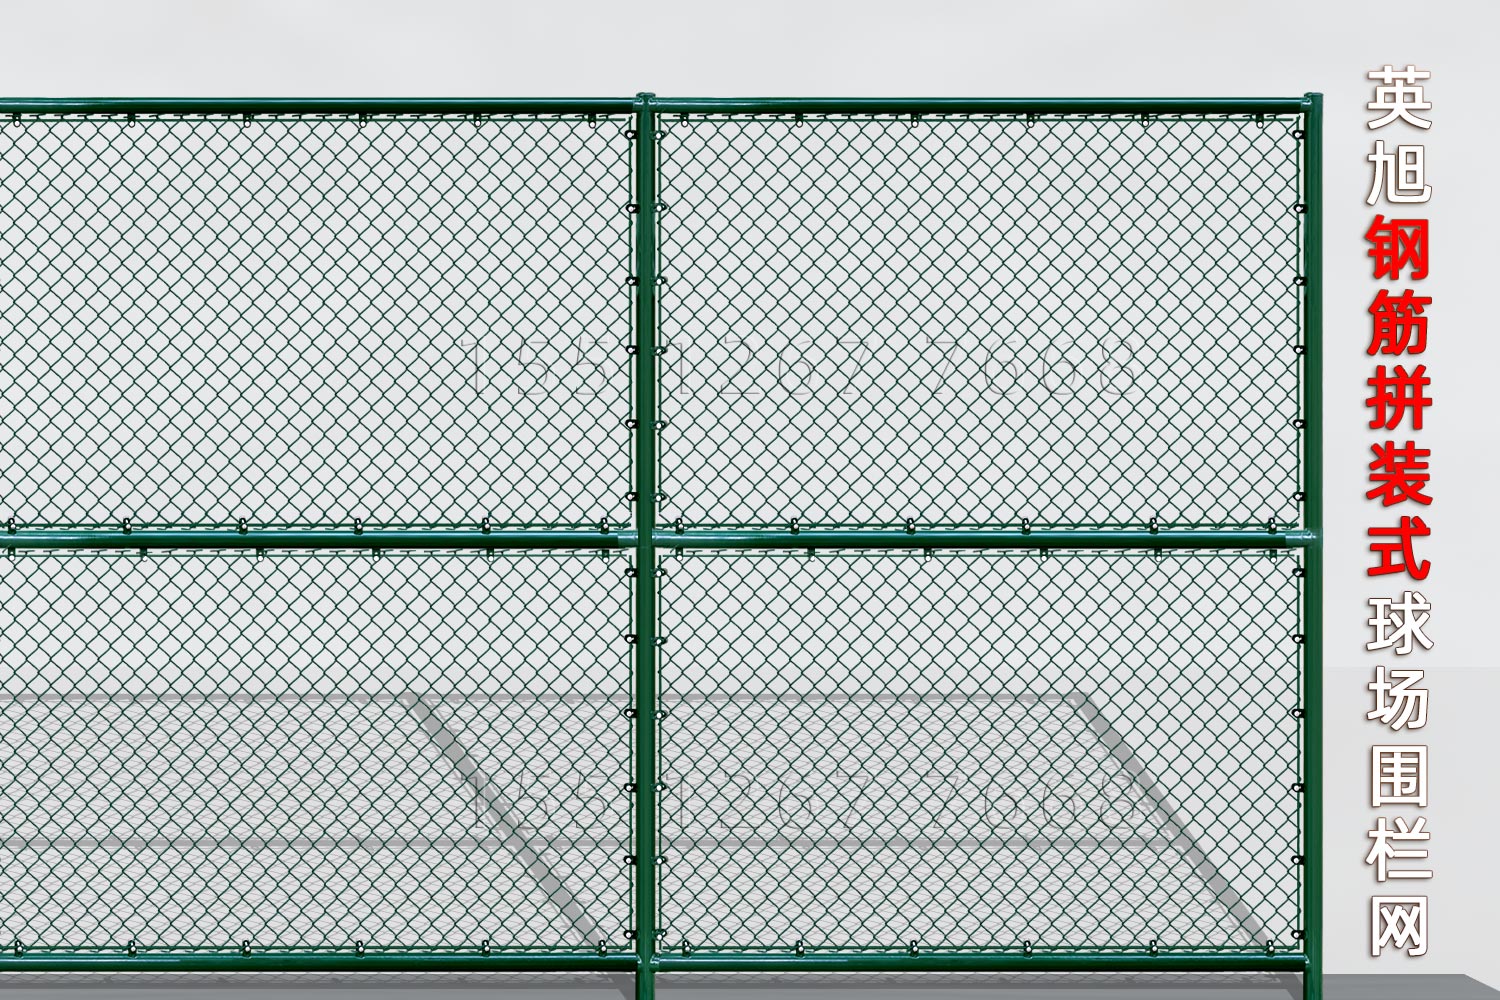 江西钢筋组装式球场围栏网